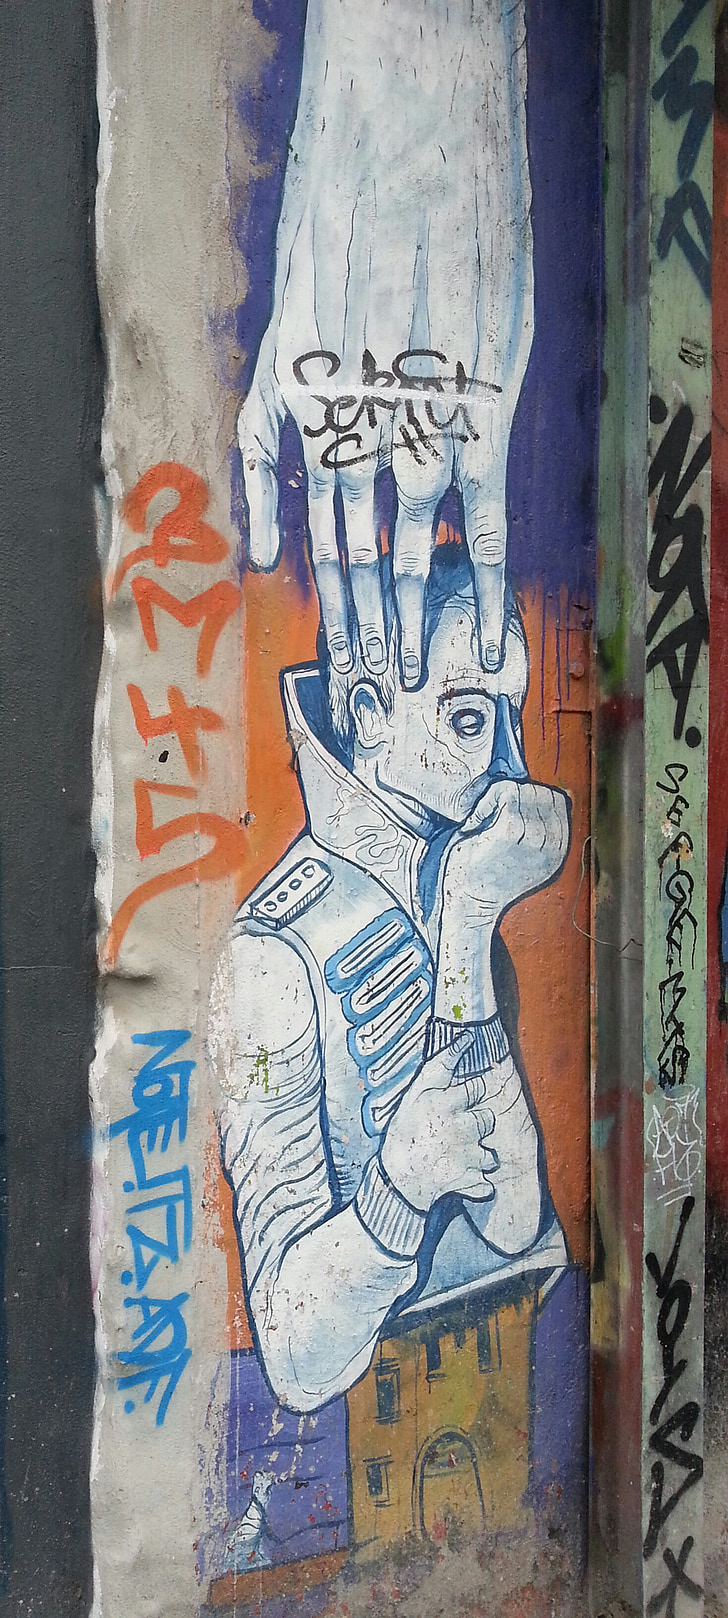 graffiti, Street art, falfestmények, Art